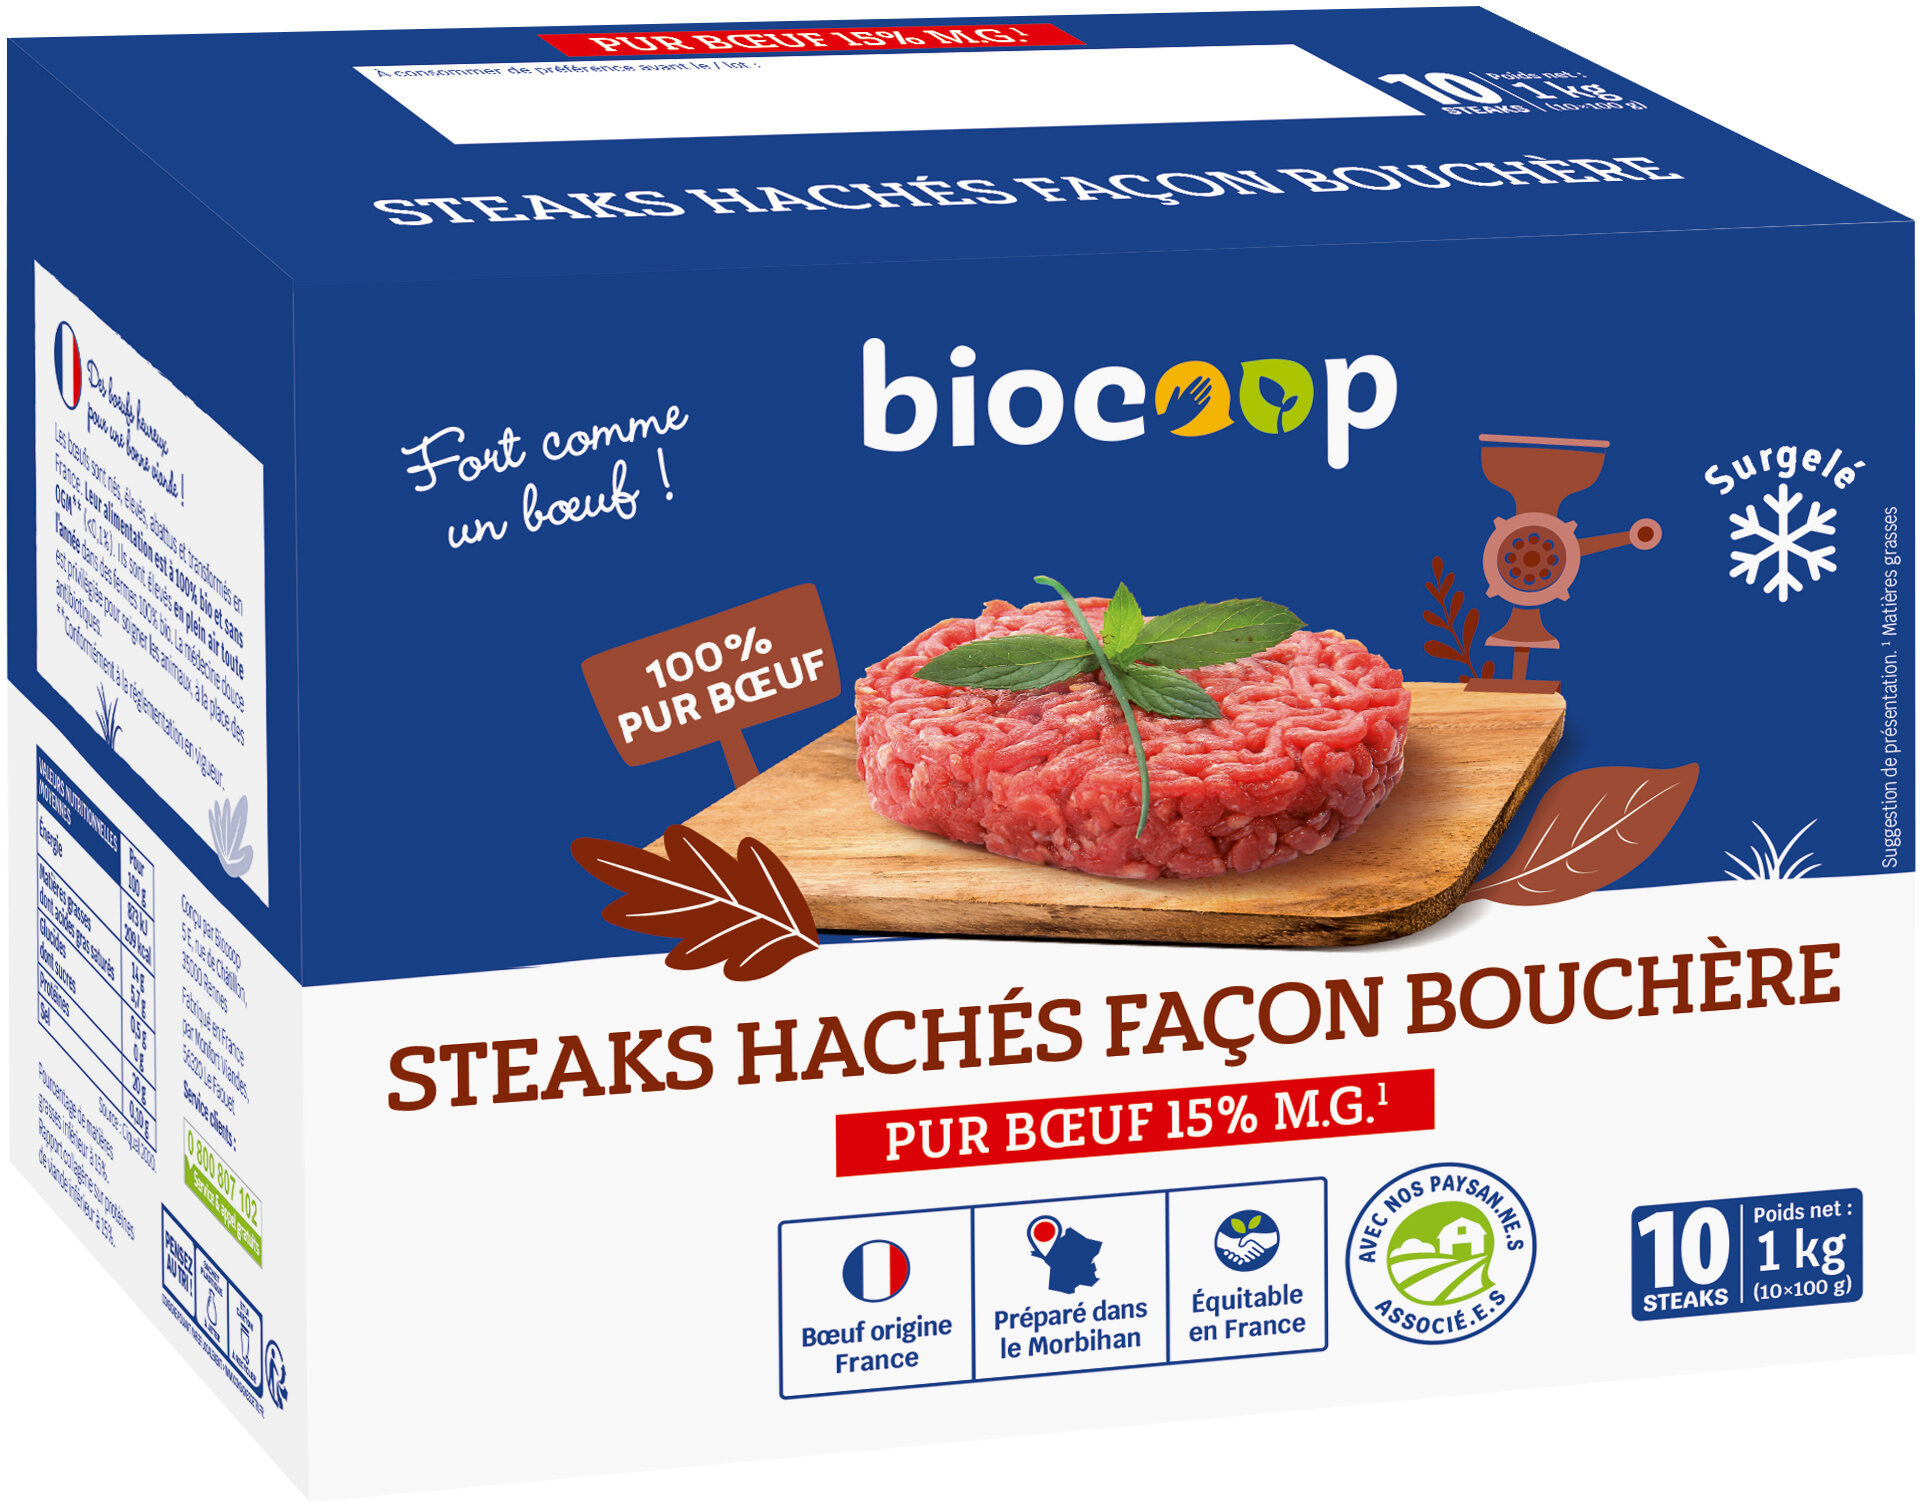 Steak haché boeuf (10) - Product - fr